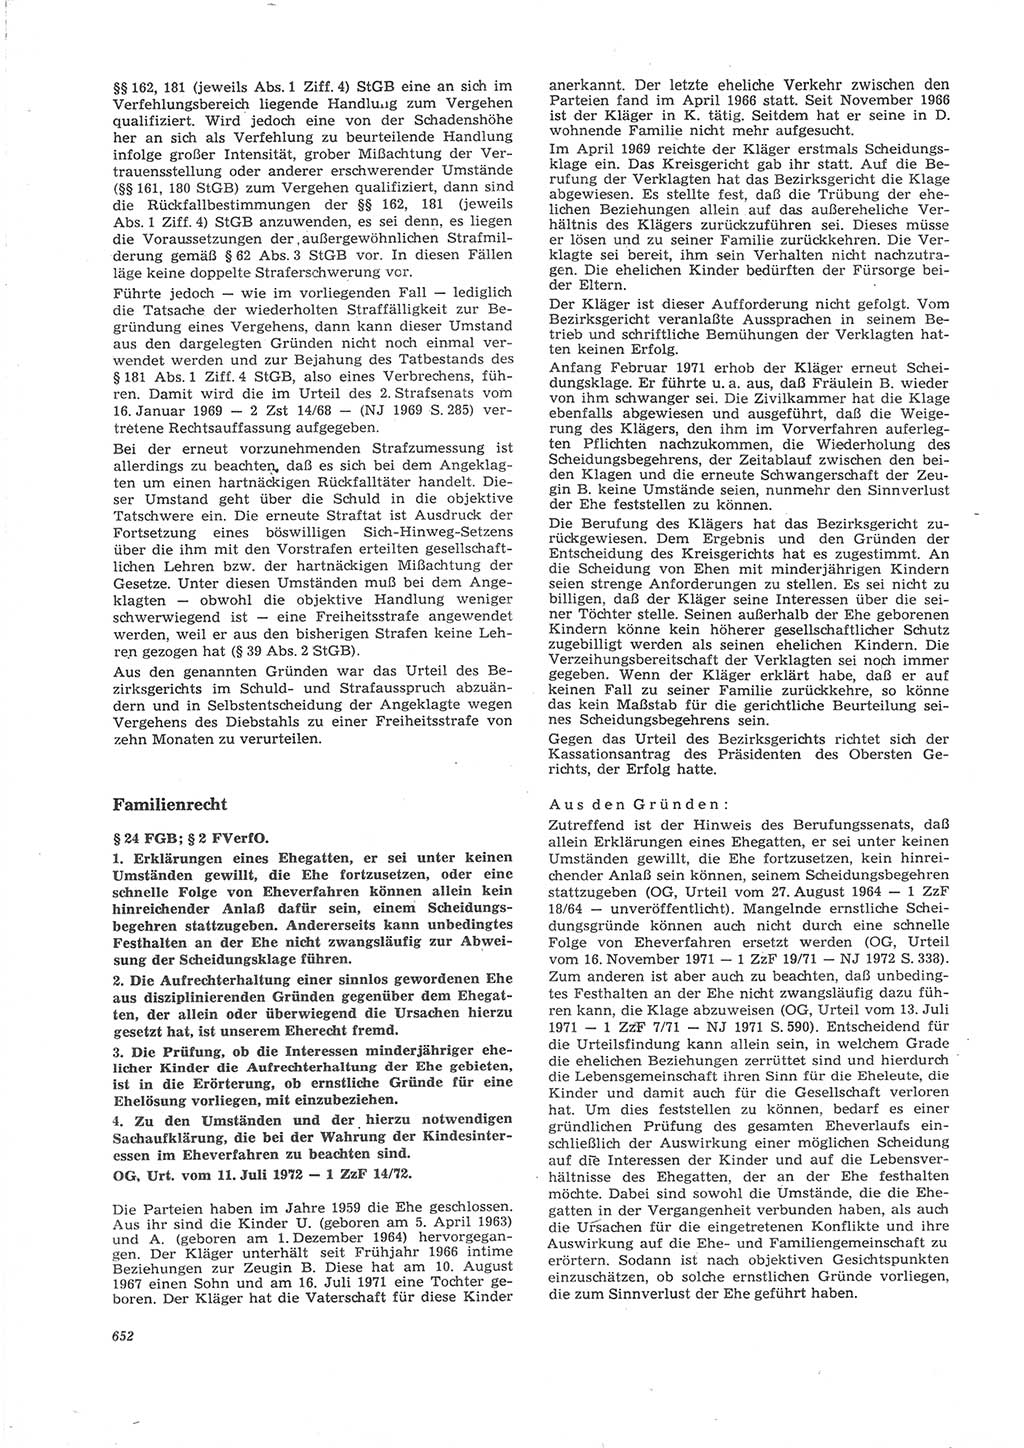 Neue Justiz (NJ), Zeitschrift für Recht und Rechtswissenschaft [Deutsche Demokratische Republik (DDR)], 26. Jahrgang 1972, Seite 652 (NJ DDR 1972, S. 652)